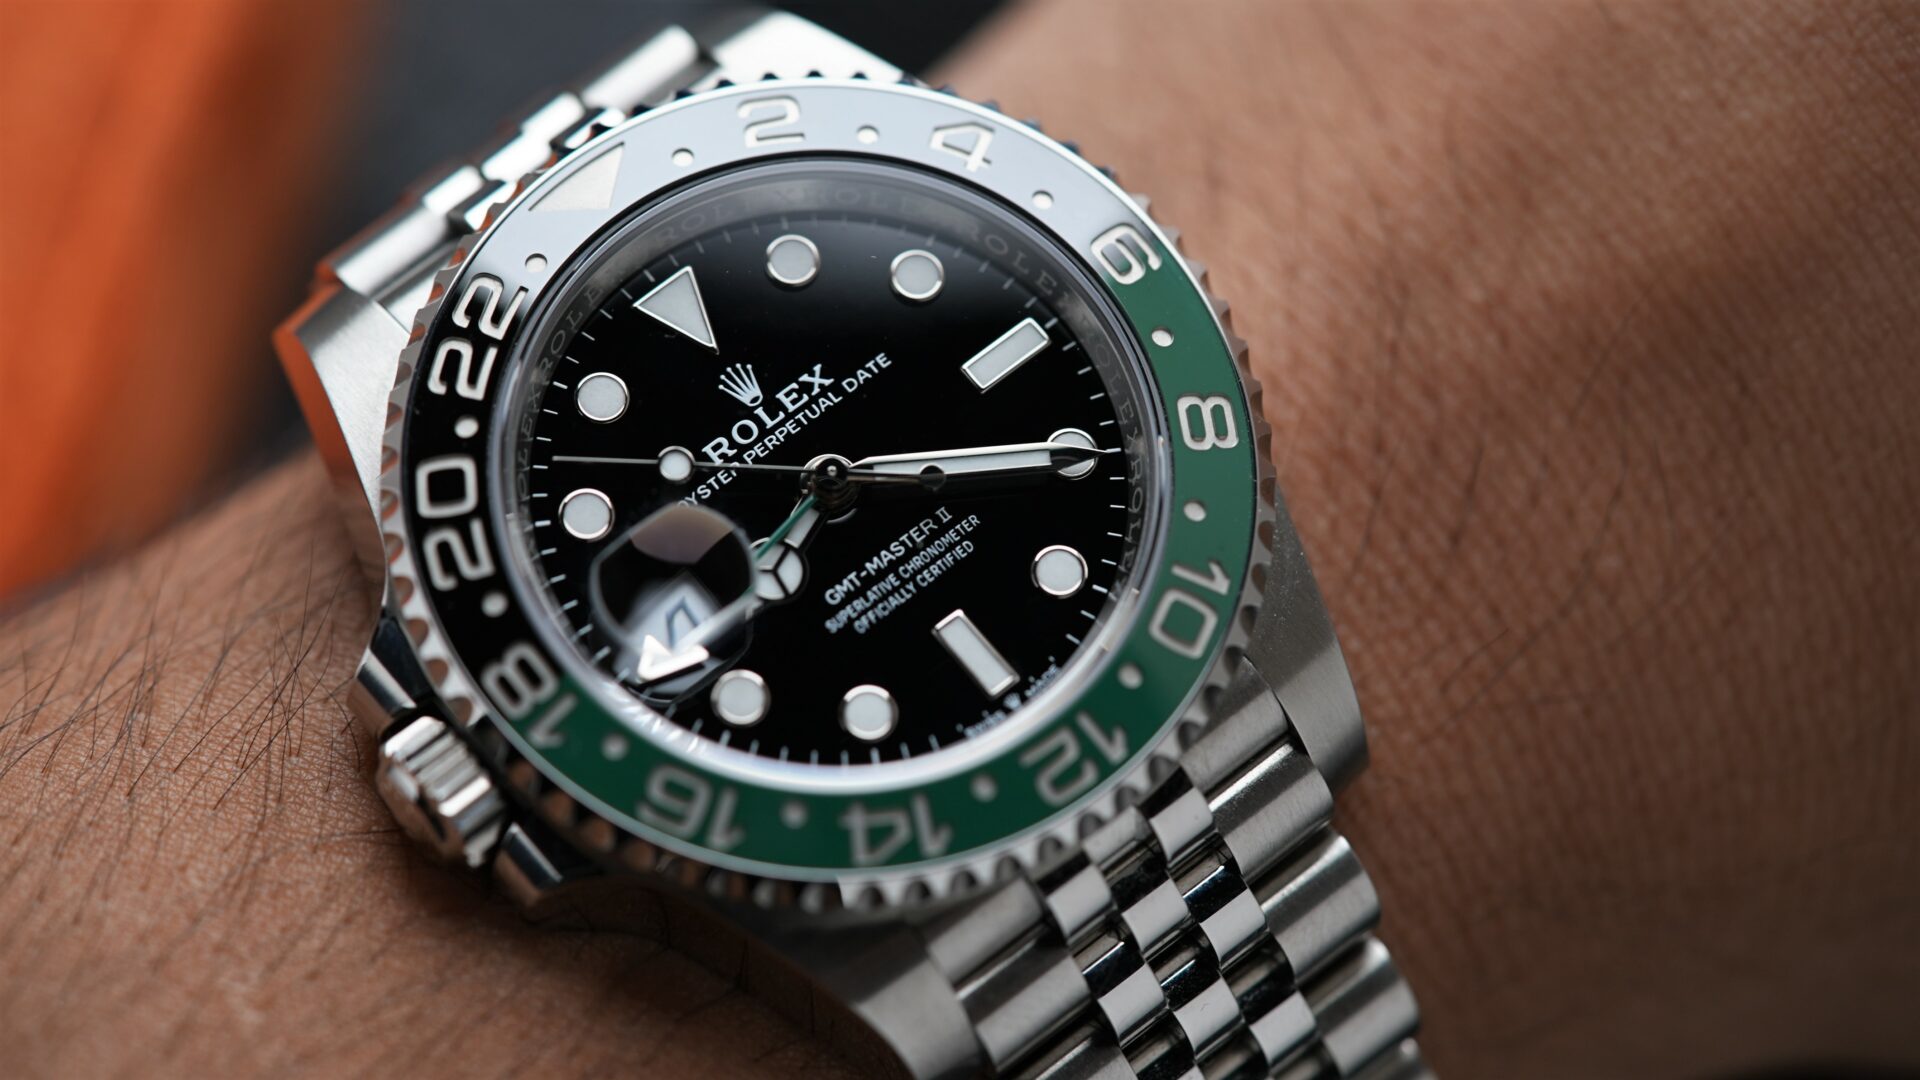 Rolex GMT-Master II 126720VTNR wristwatch featured on the wrist.